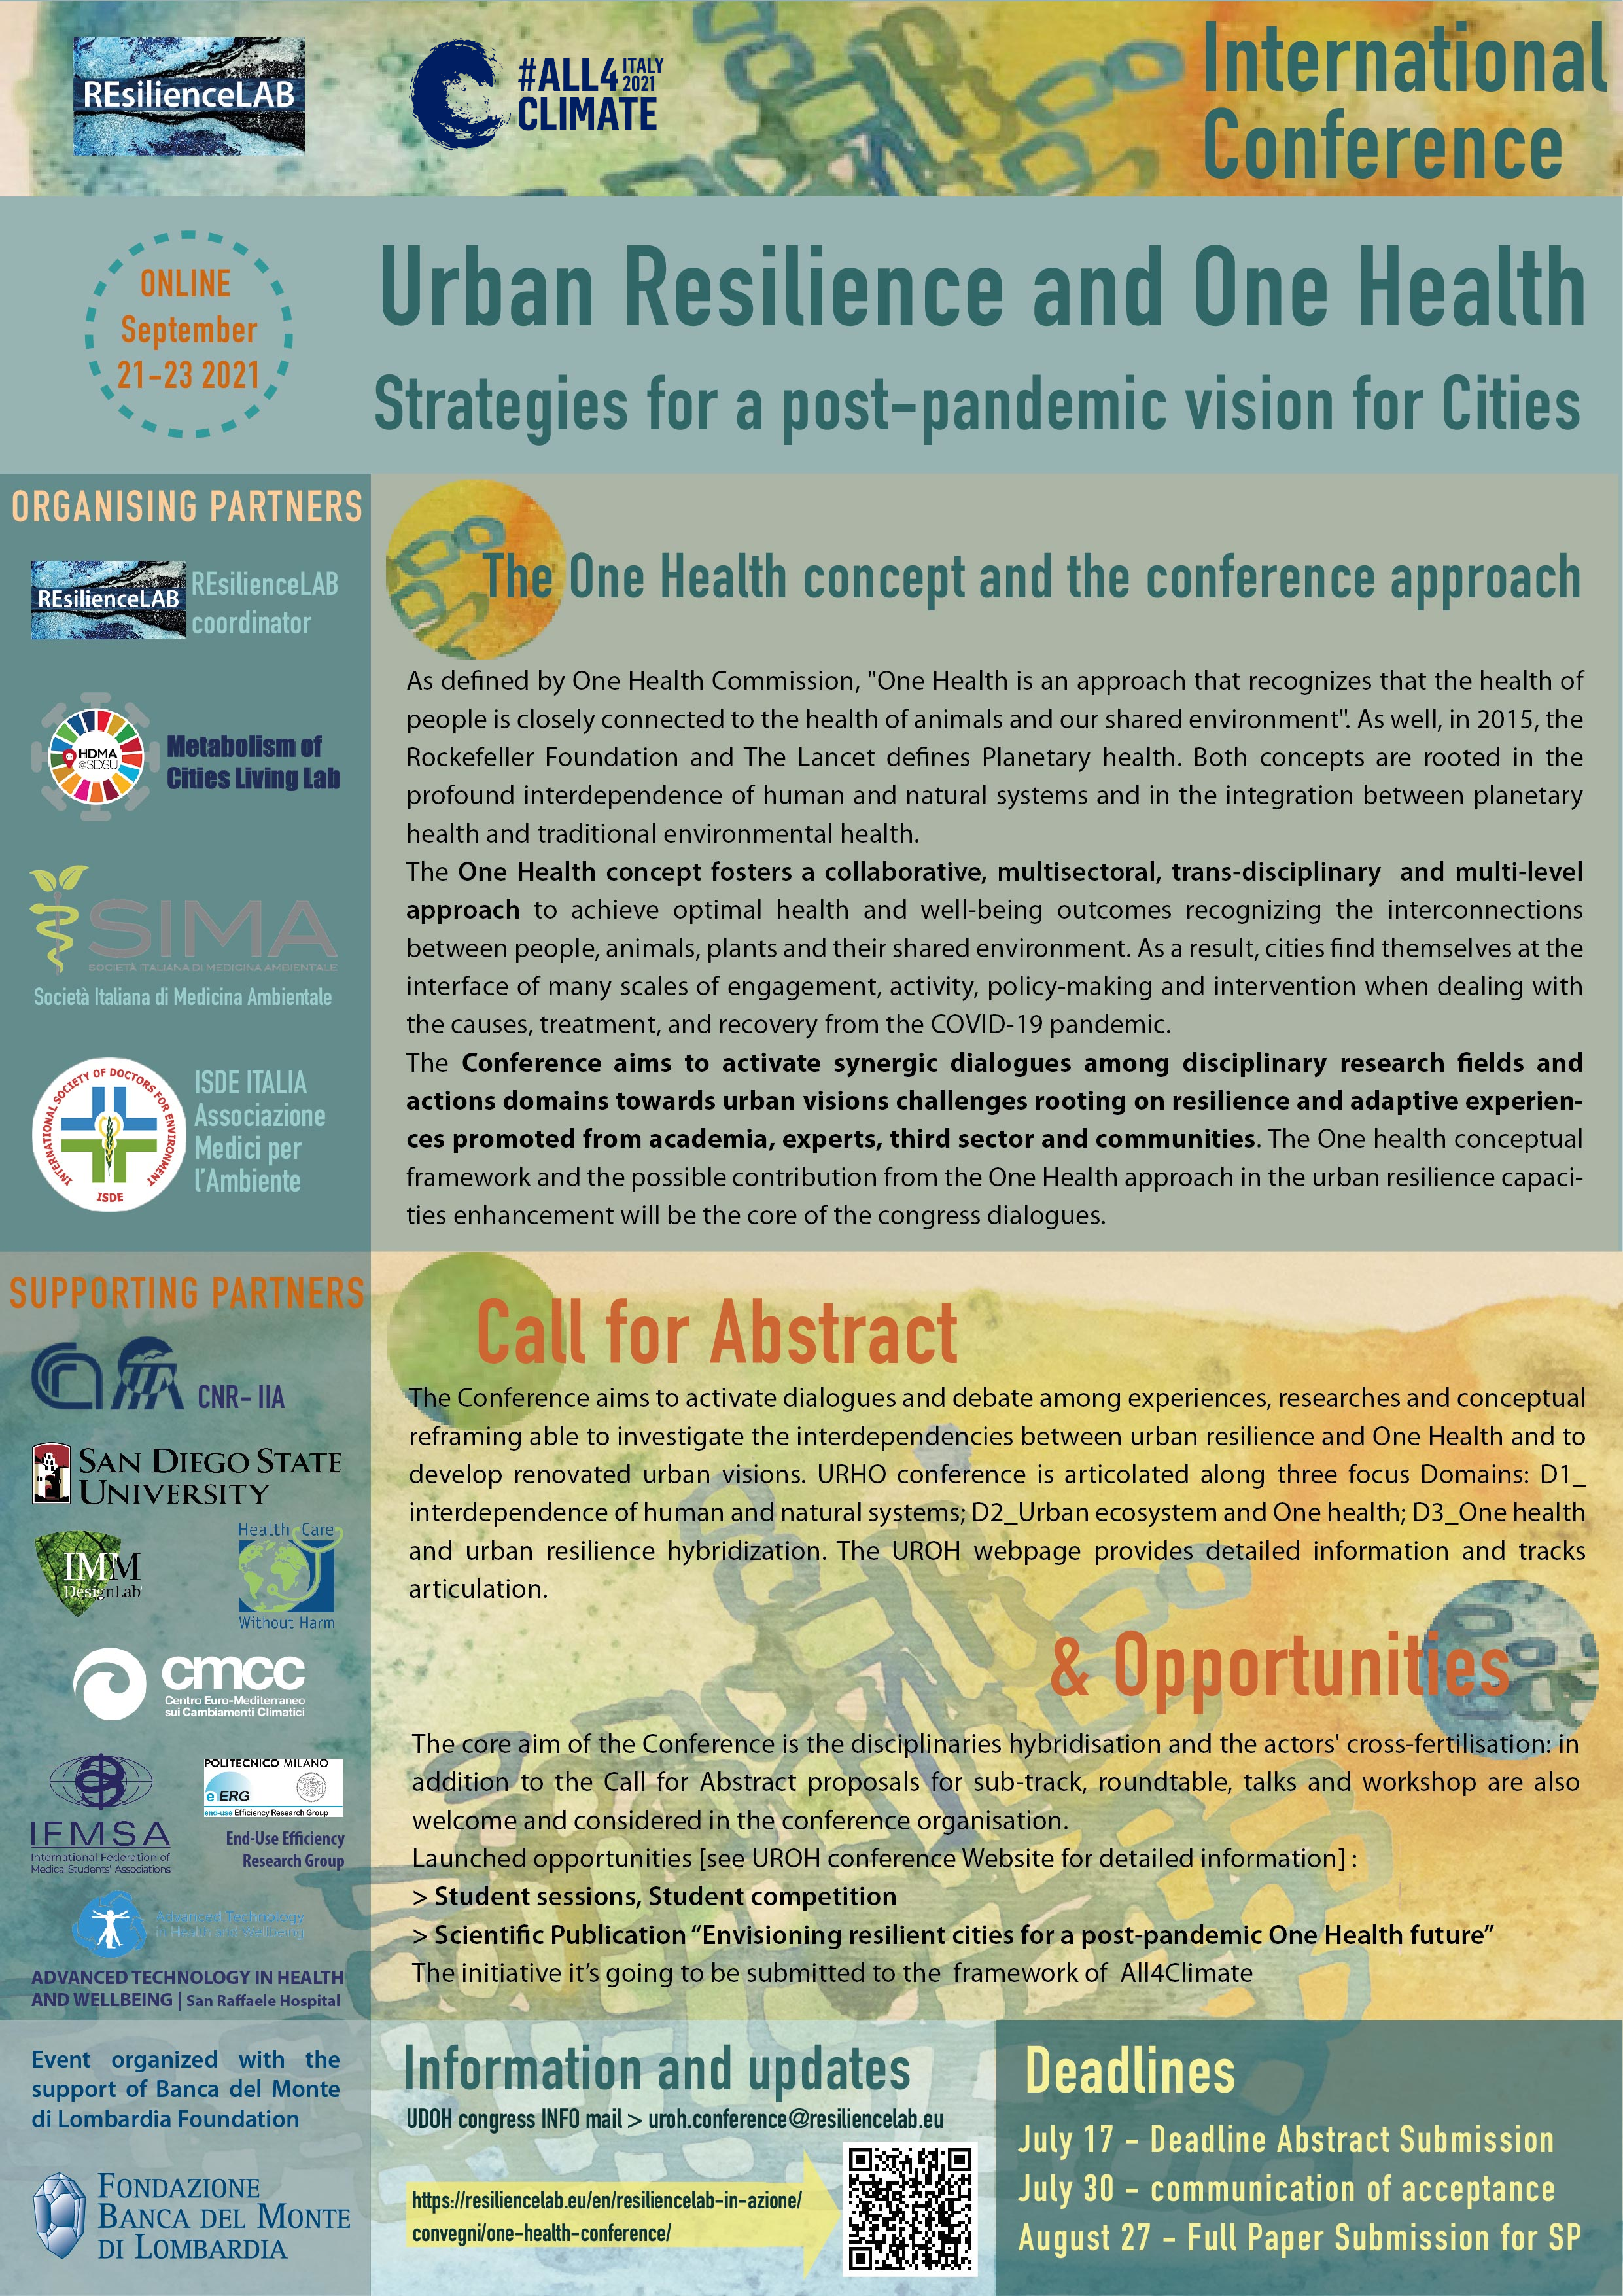 Strategie per una visione post-pandemia: convegno internazionale